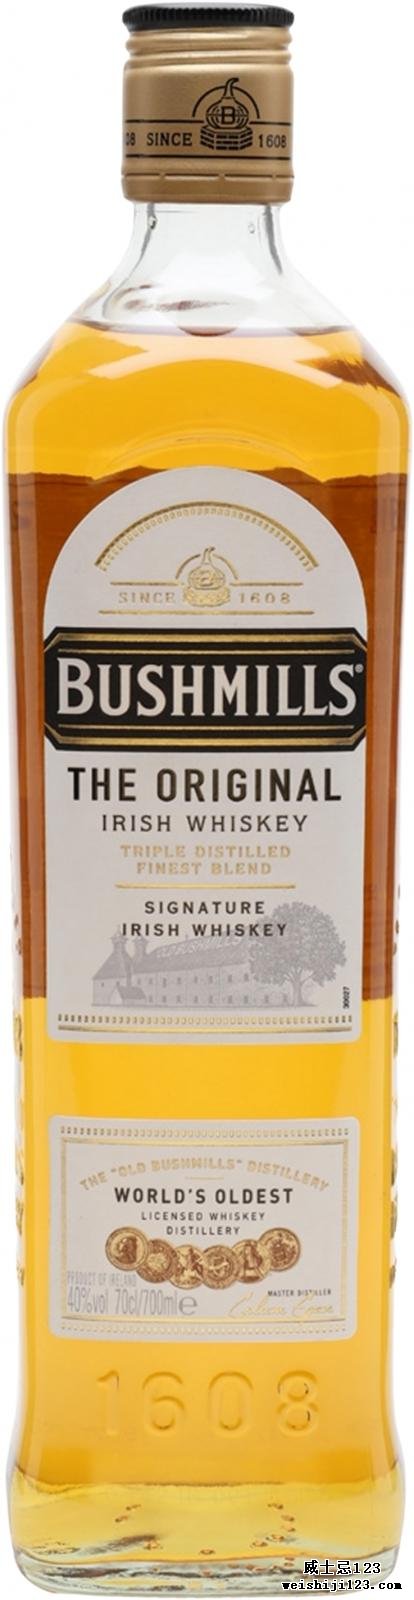 Bushmills The Original